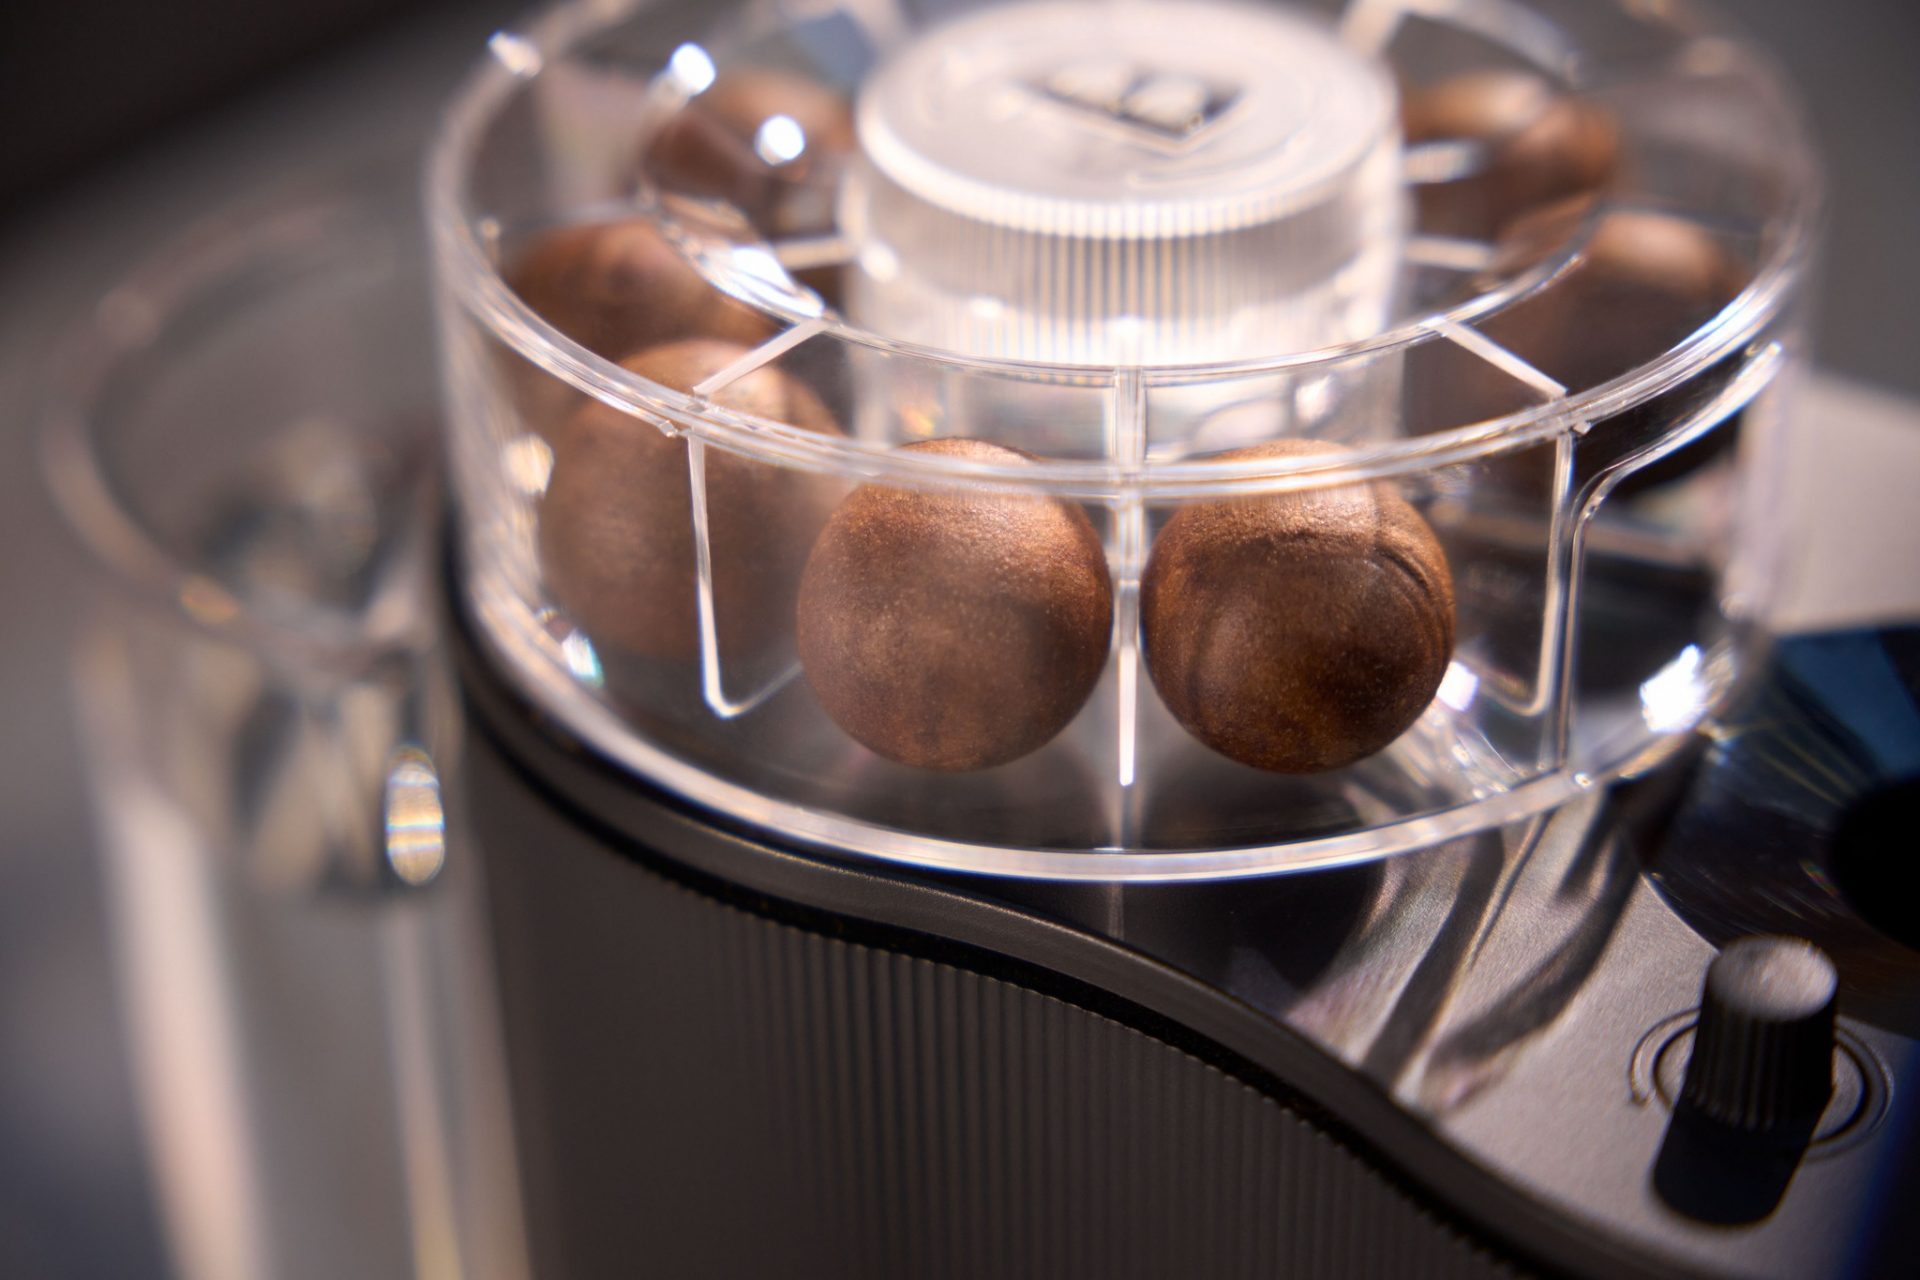 Кульки, загорнуті у водорості — тепер так виглядає інноваційна кава